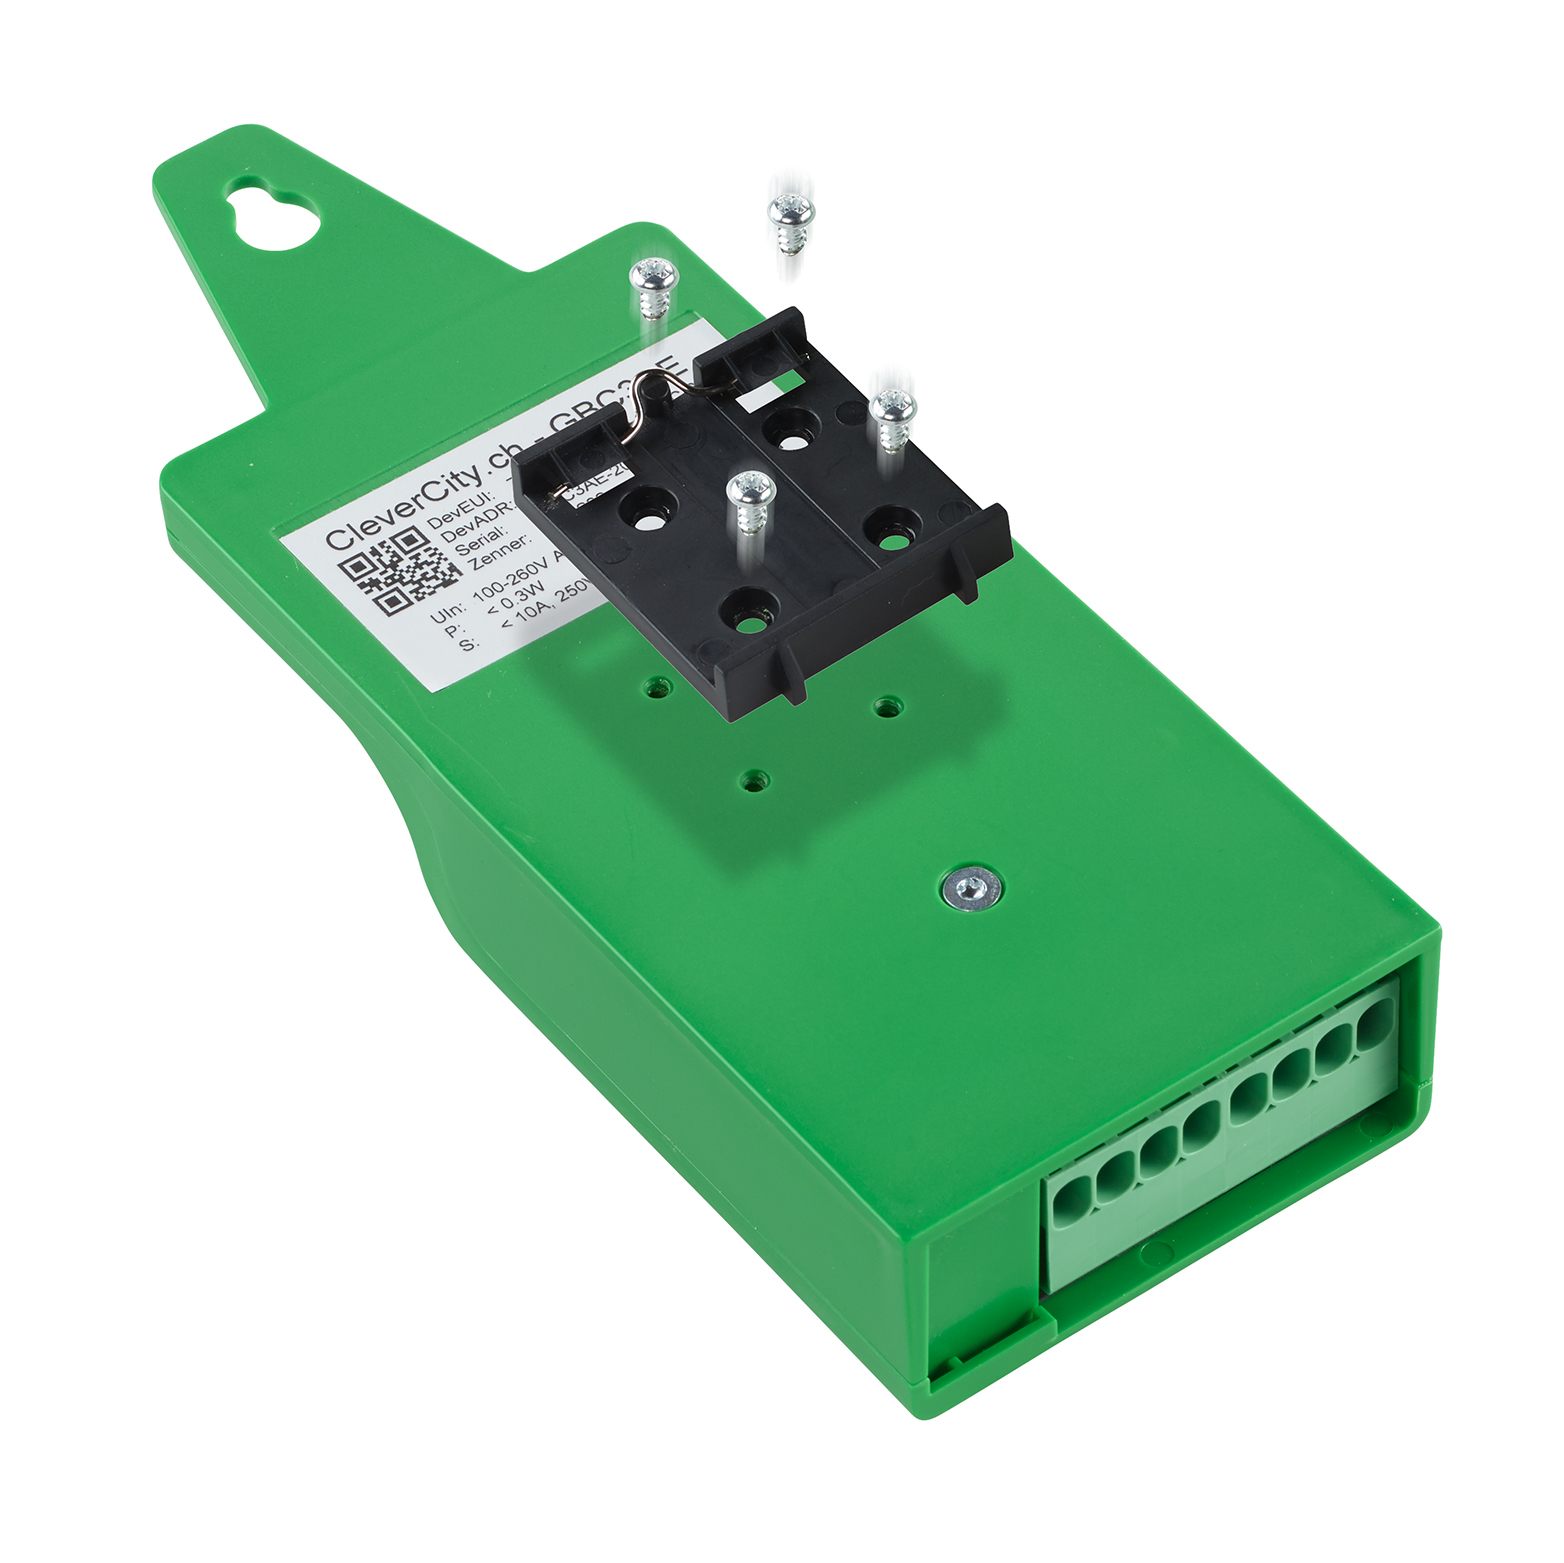 CleverCity Hutschienenadapter für Greenbox Compact 3 - Installation an Greenbox